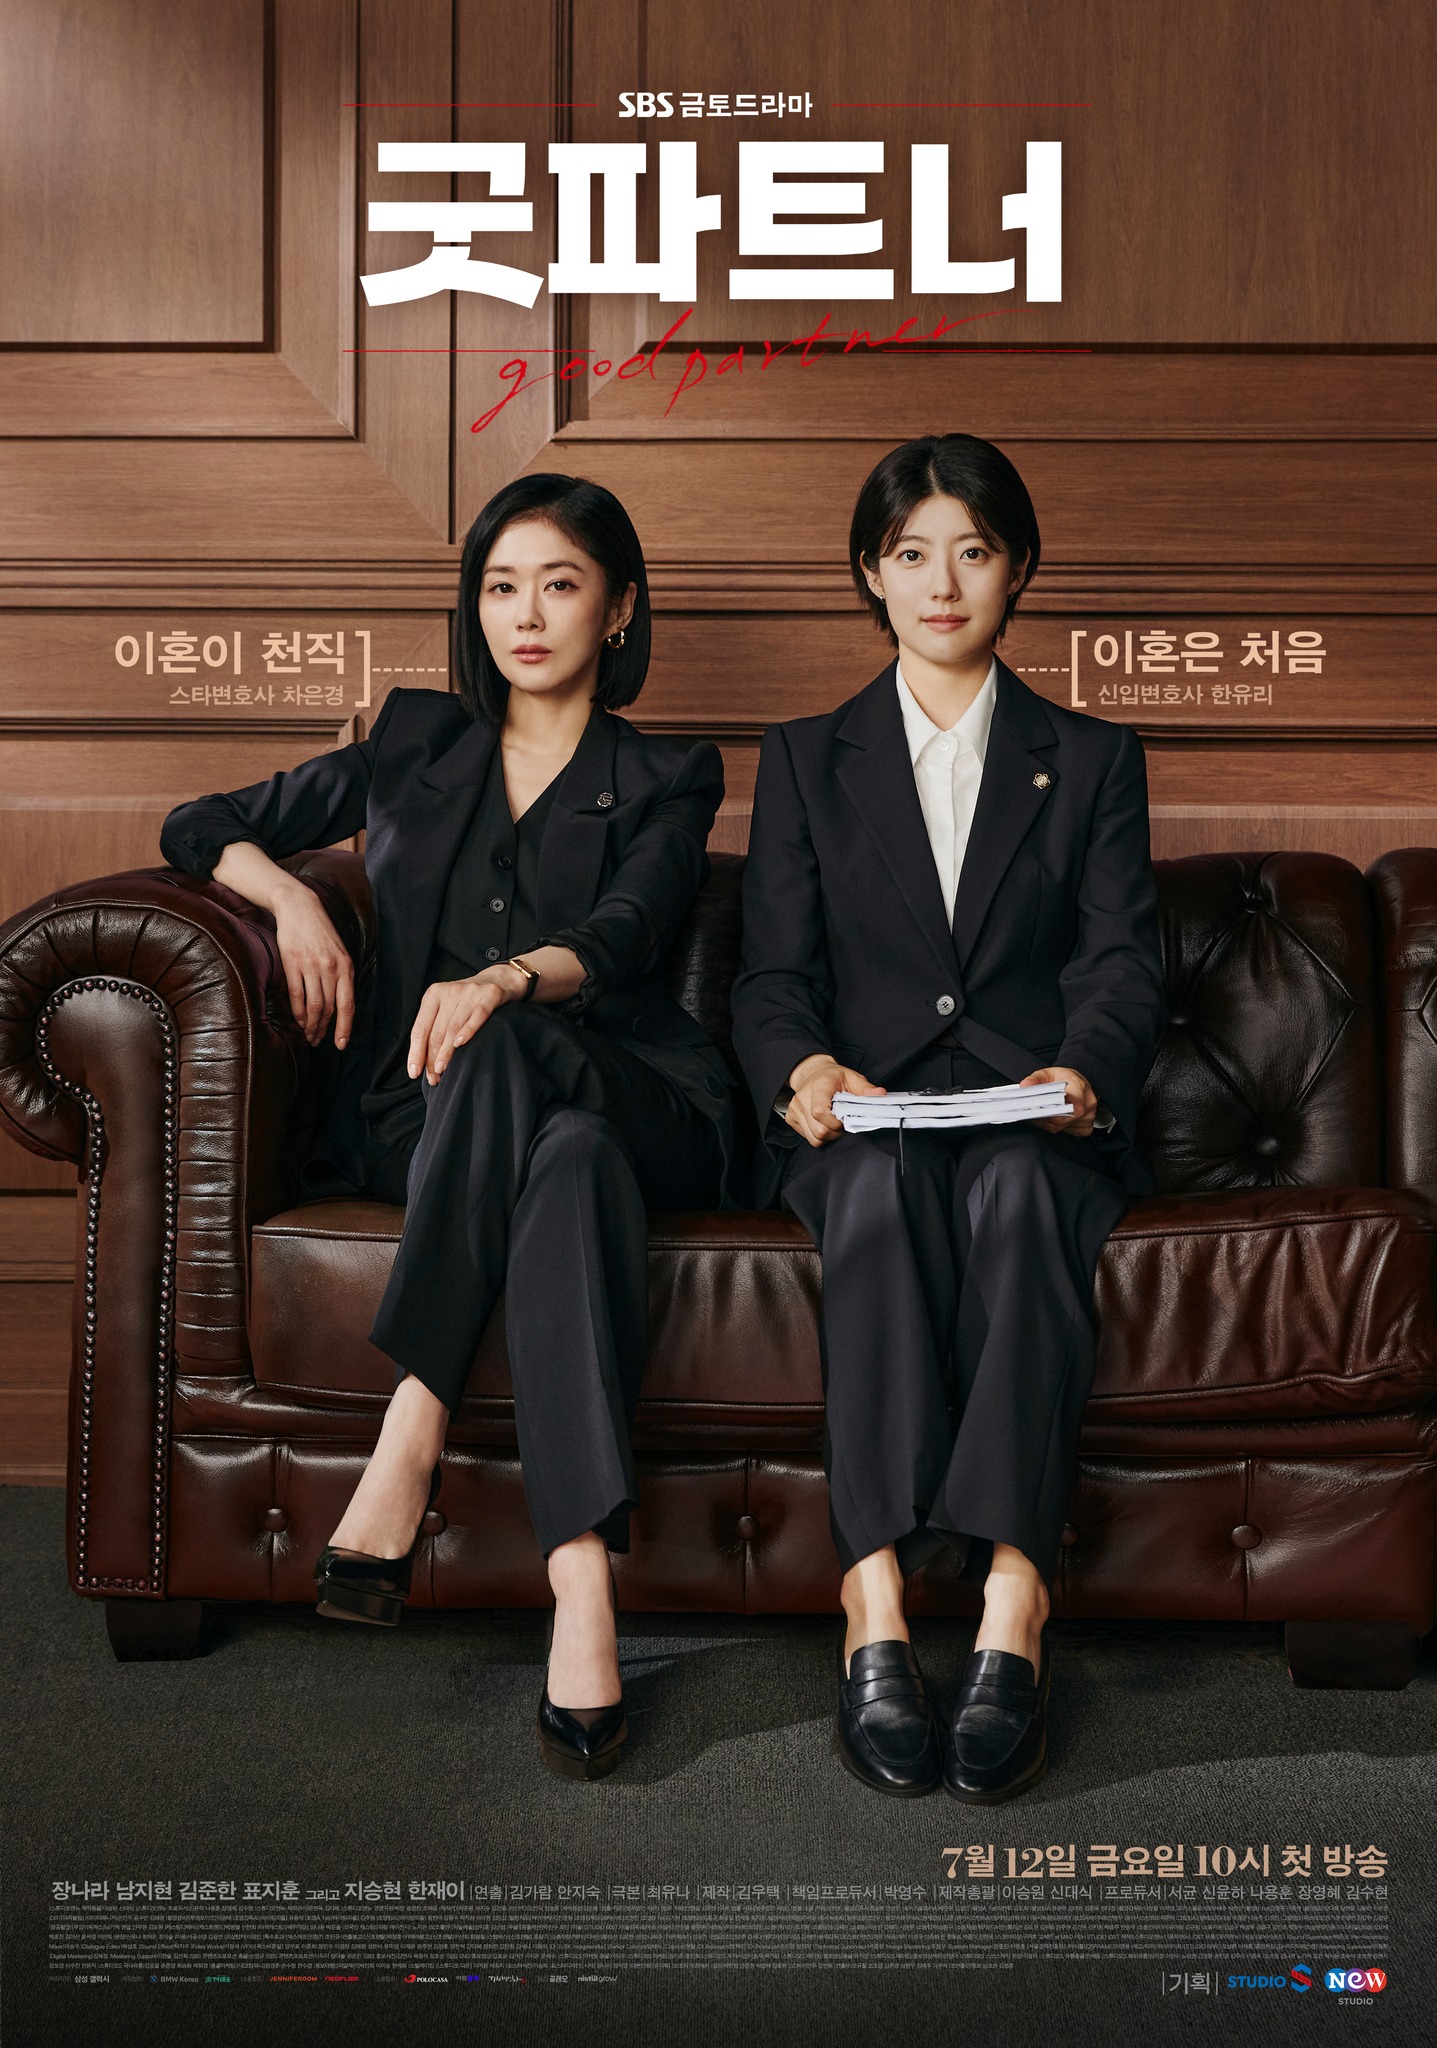 เรื่องย่อ ซีรีส์เกาหลี “คู่หูทนายตัวแม่ Good Partner”